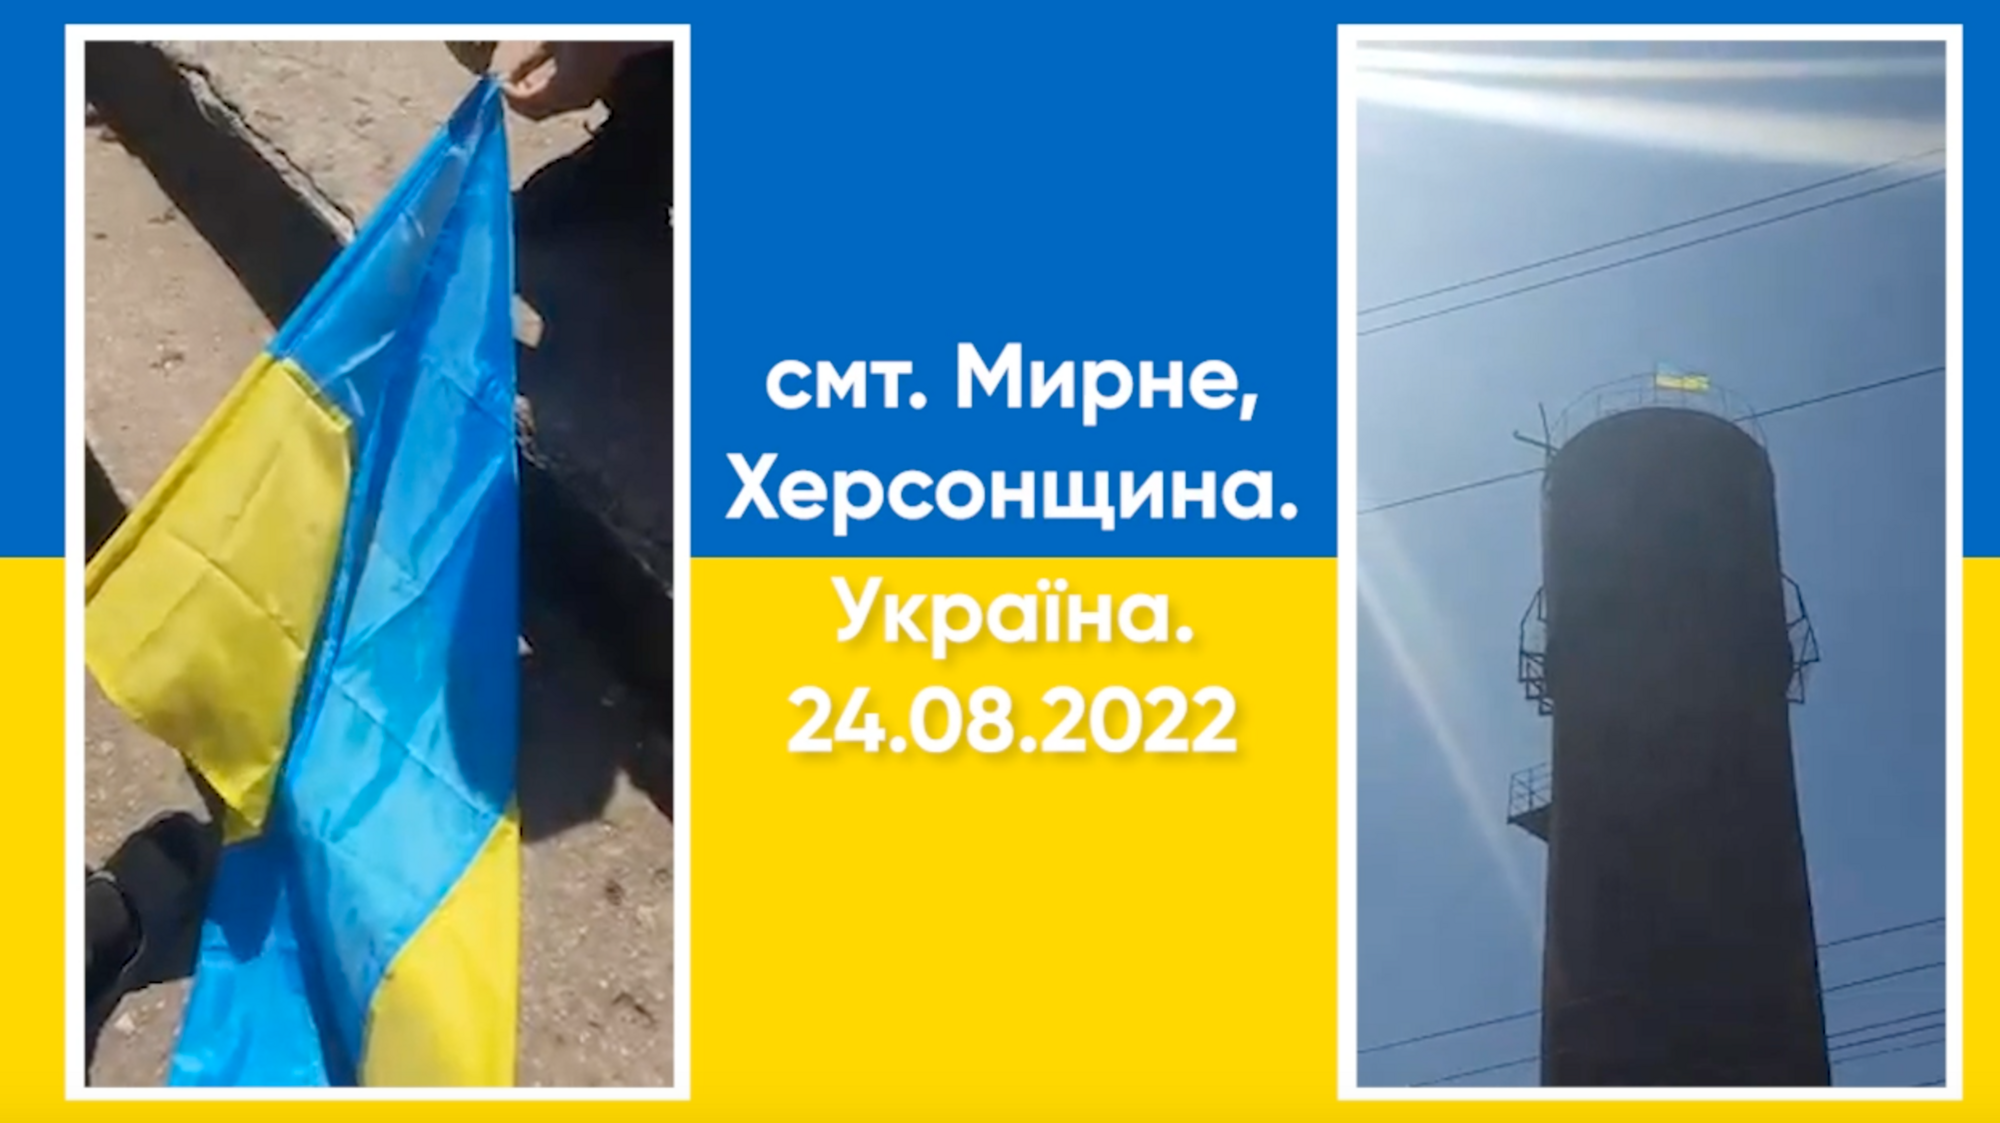 Появился украинский флаг и над оккупированной Херсонщиной.